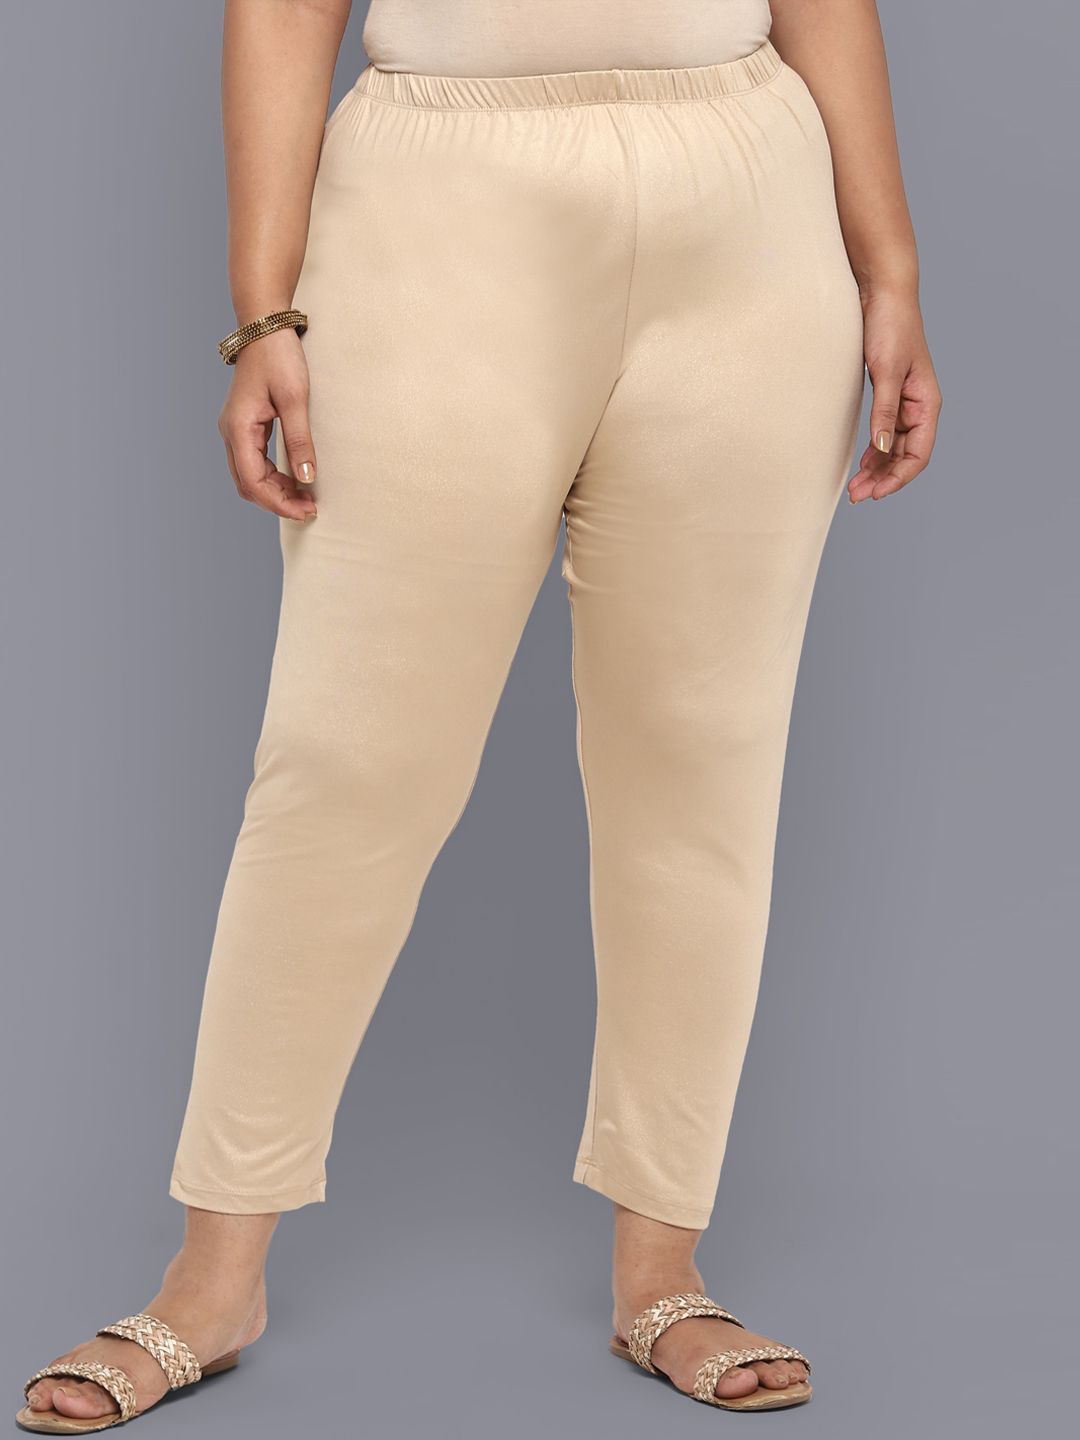 AURELIA Women Cream-Coloured Regular Fit Trousers Price in India